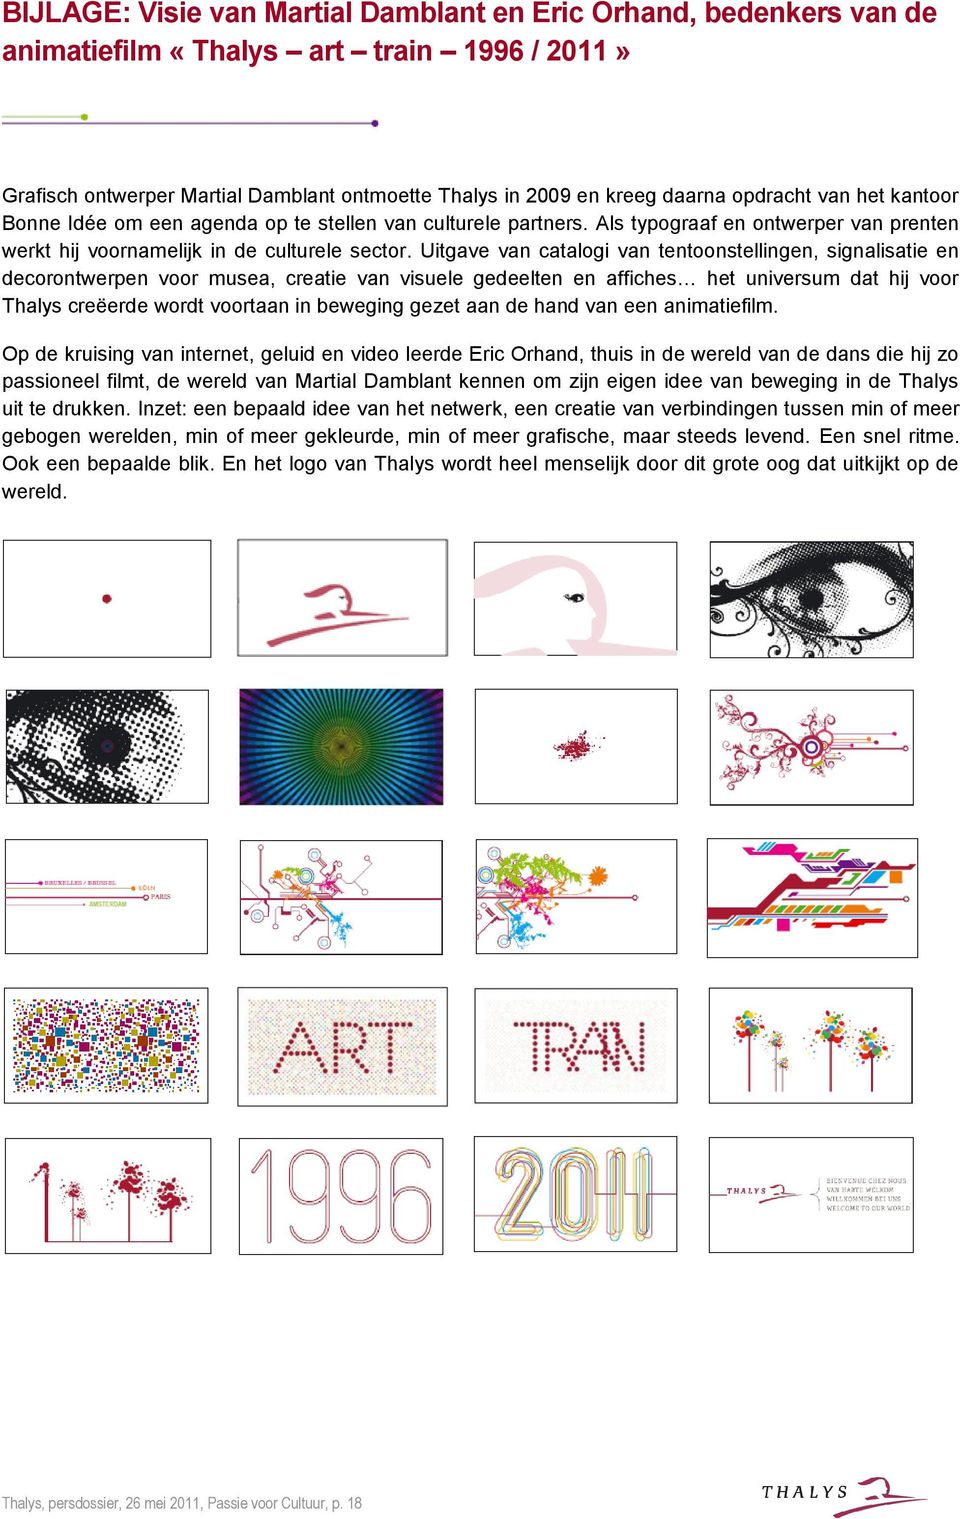 Uitgave van catalogi van tentoonstellingen, signalisatie en decorontwerpen voor musea, creatie van visuele gedeelten en affiches het universum dat hij voor Thalys creëerde wordt voortaan in beweging